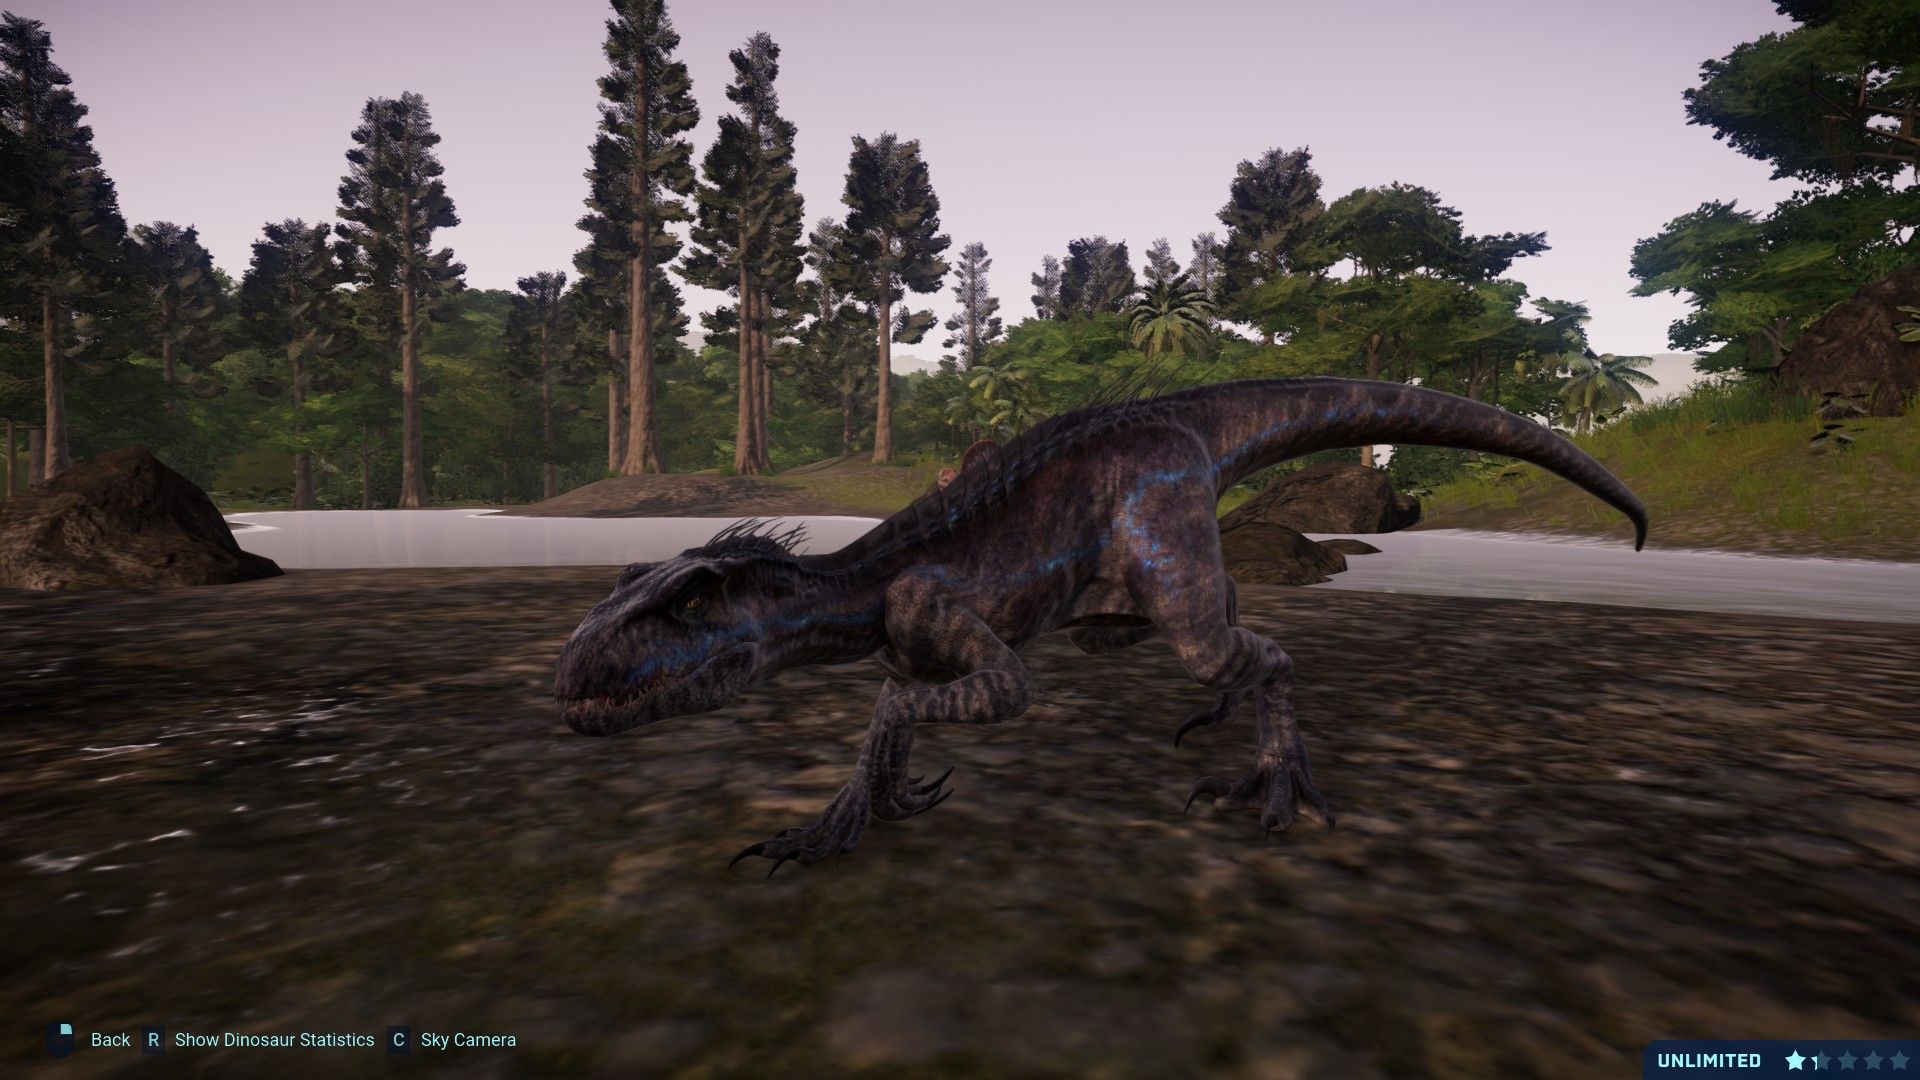 Jurassic World The Game Indoraptor Gen 2 texture mod at Jurassic World Evolution Nexus and community